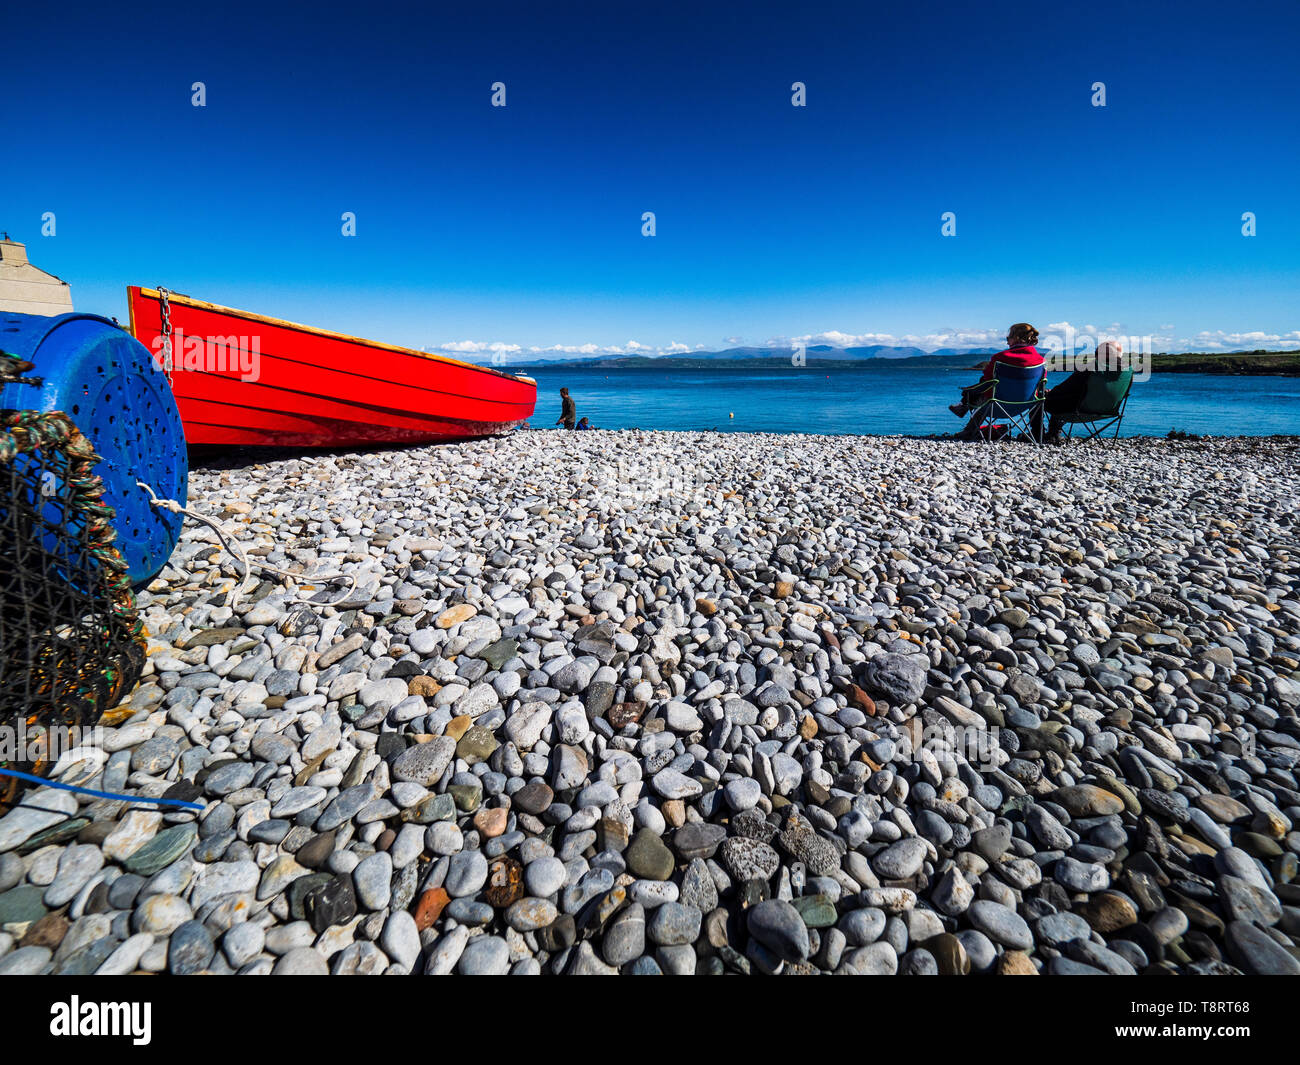 Staycation - British Vacaciones en la playa - Anglesey - playa de guijarros con barco rojo Foto de stock